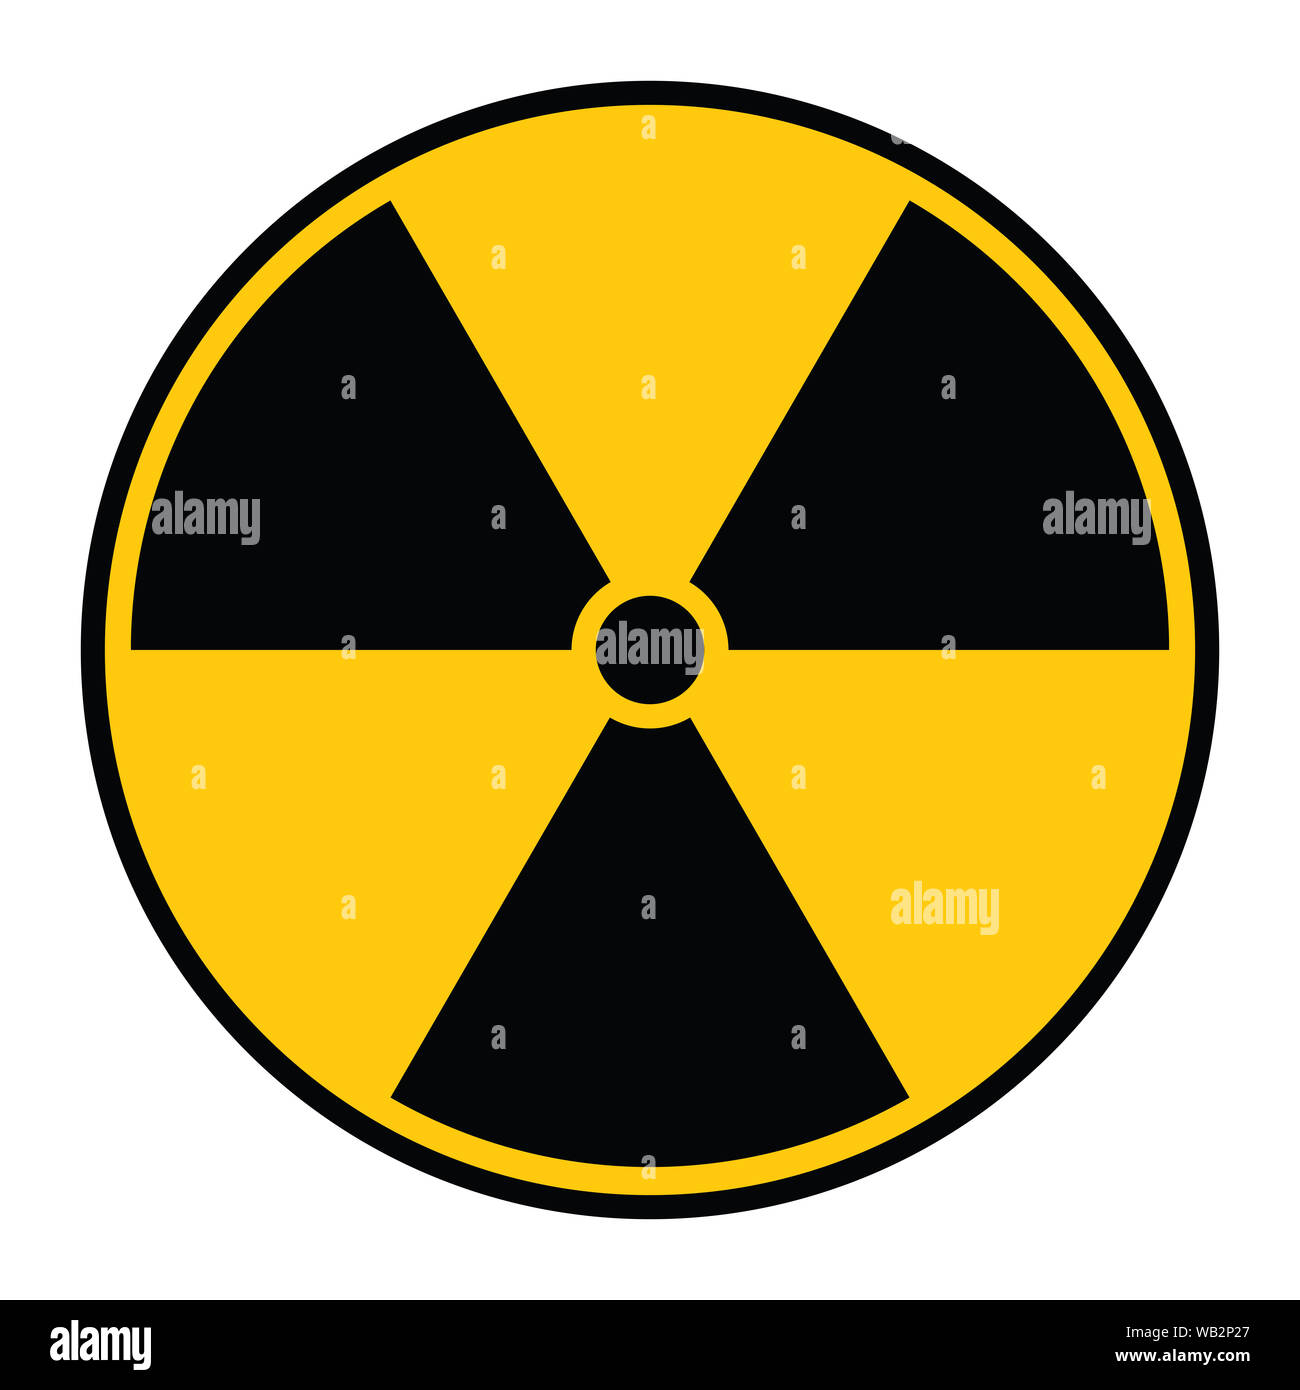 Ionizing Radiation Hazard Symbol Stock Photo